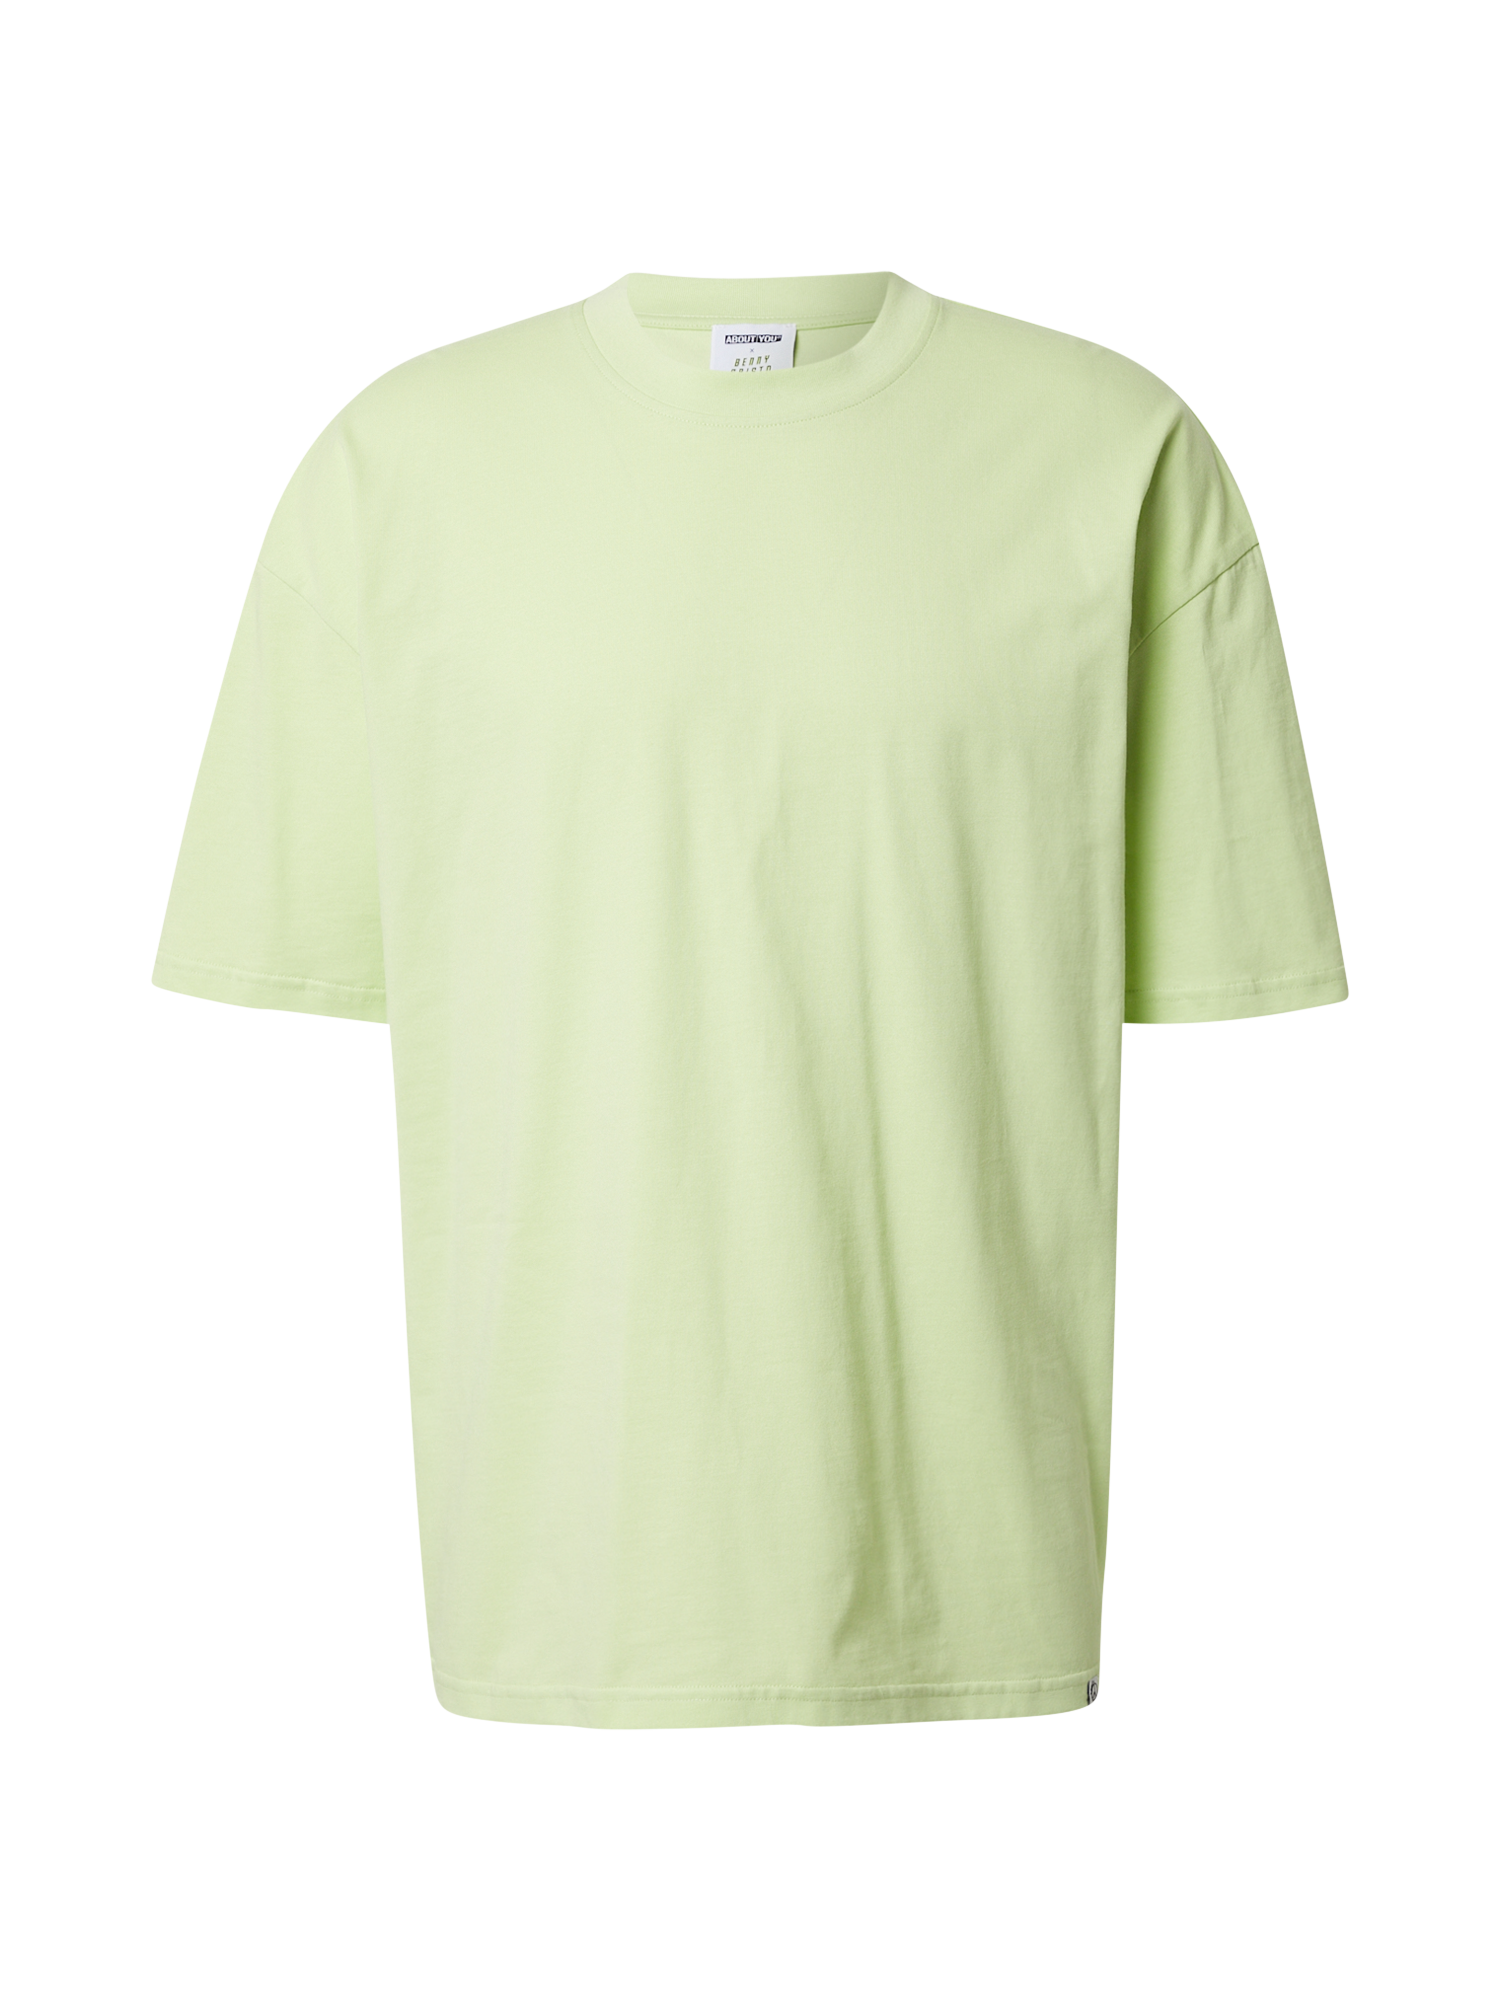 yTnhZ Odzież  x Benny Cristo Koszulka Mats w kolorze Zielonym 